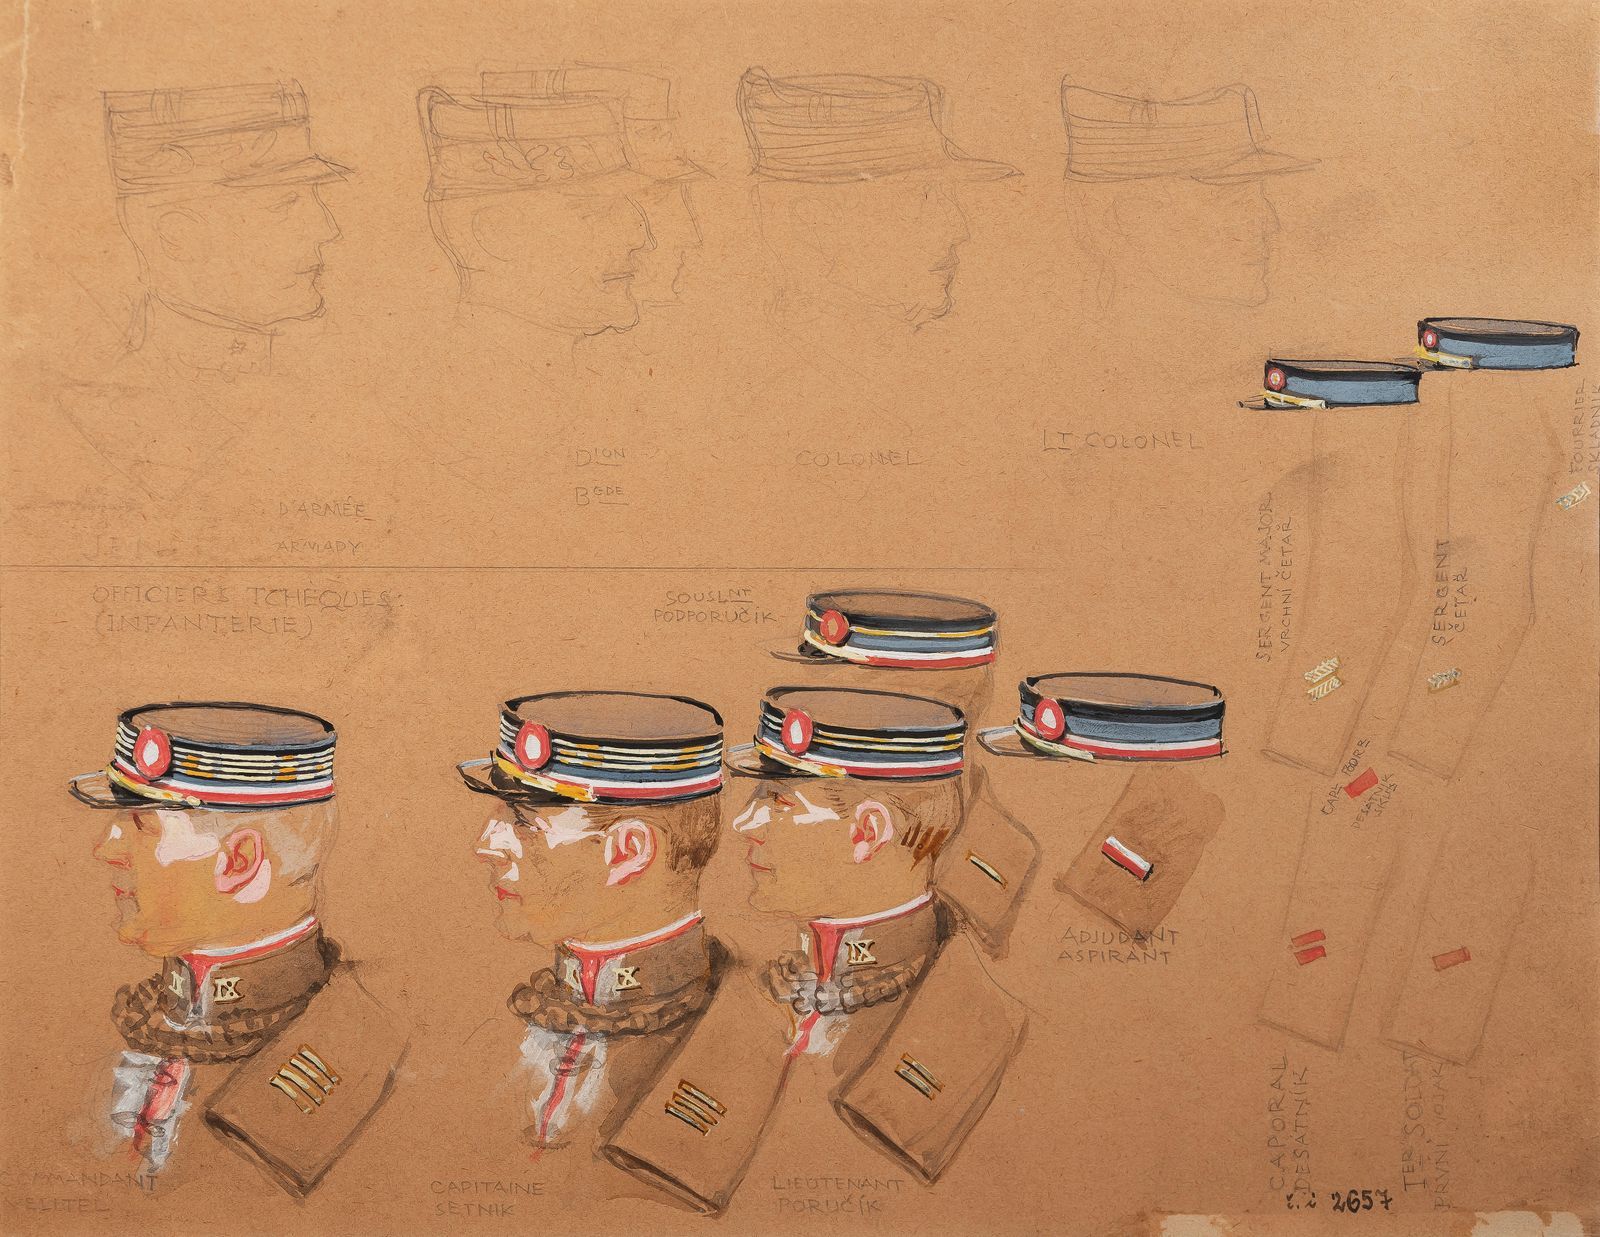 František Kupka: Návrhy čepic a hodnostních označení pro důstojníky čs. armády, kolem 1918, akvarel a kvaš na papíře, 325 × 240 cm, nesignováno